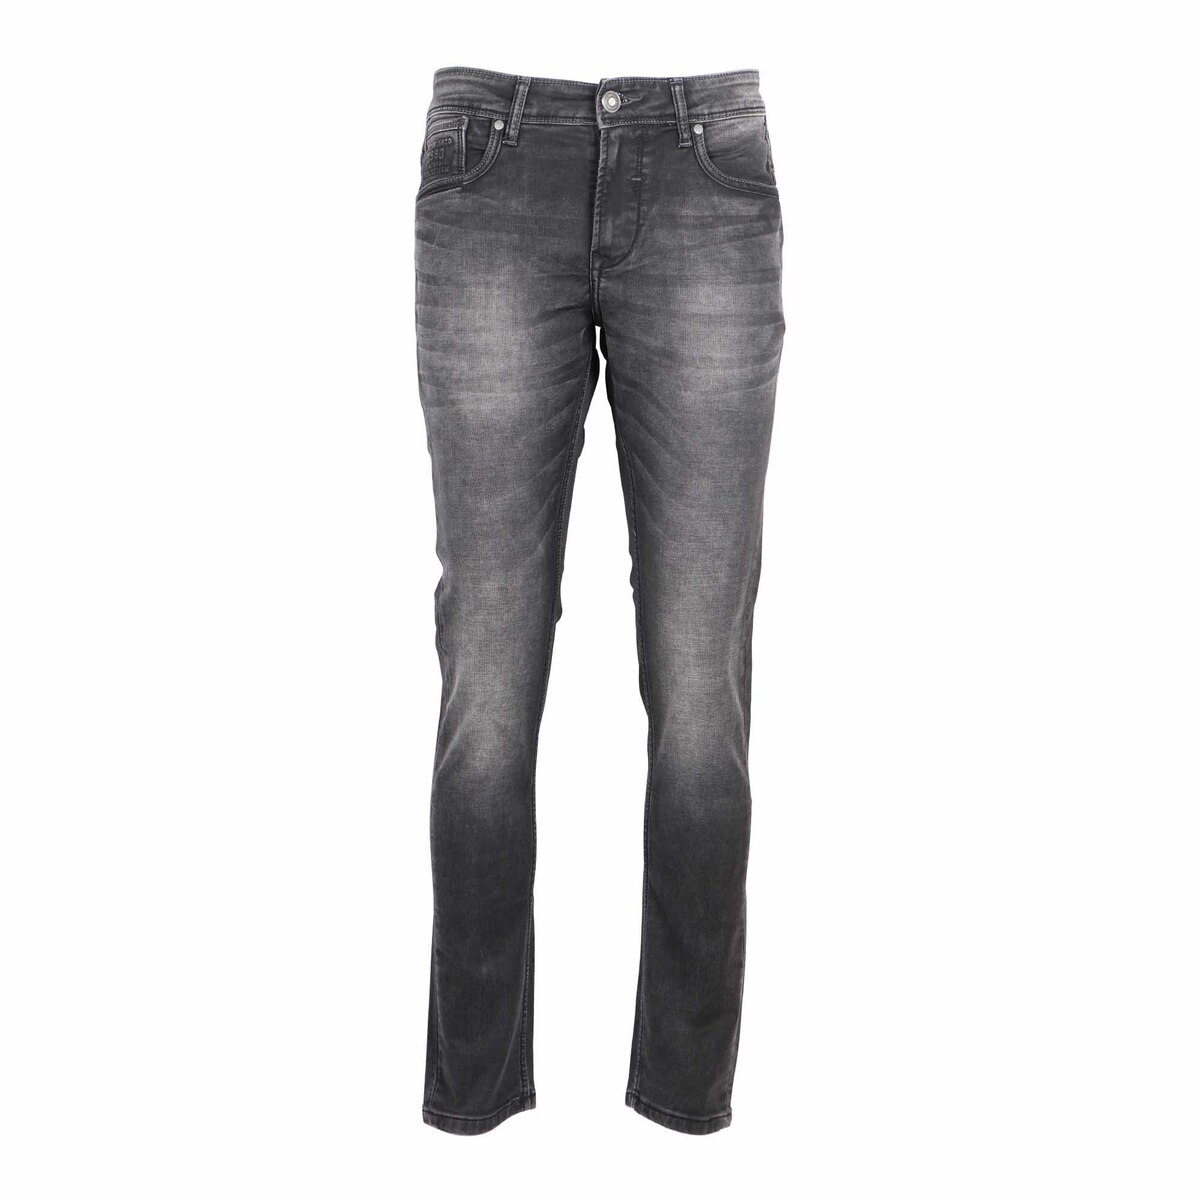 Sunnex Men's Slim Fit Jeans WR-21504 Dark Brown 38